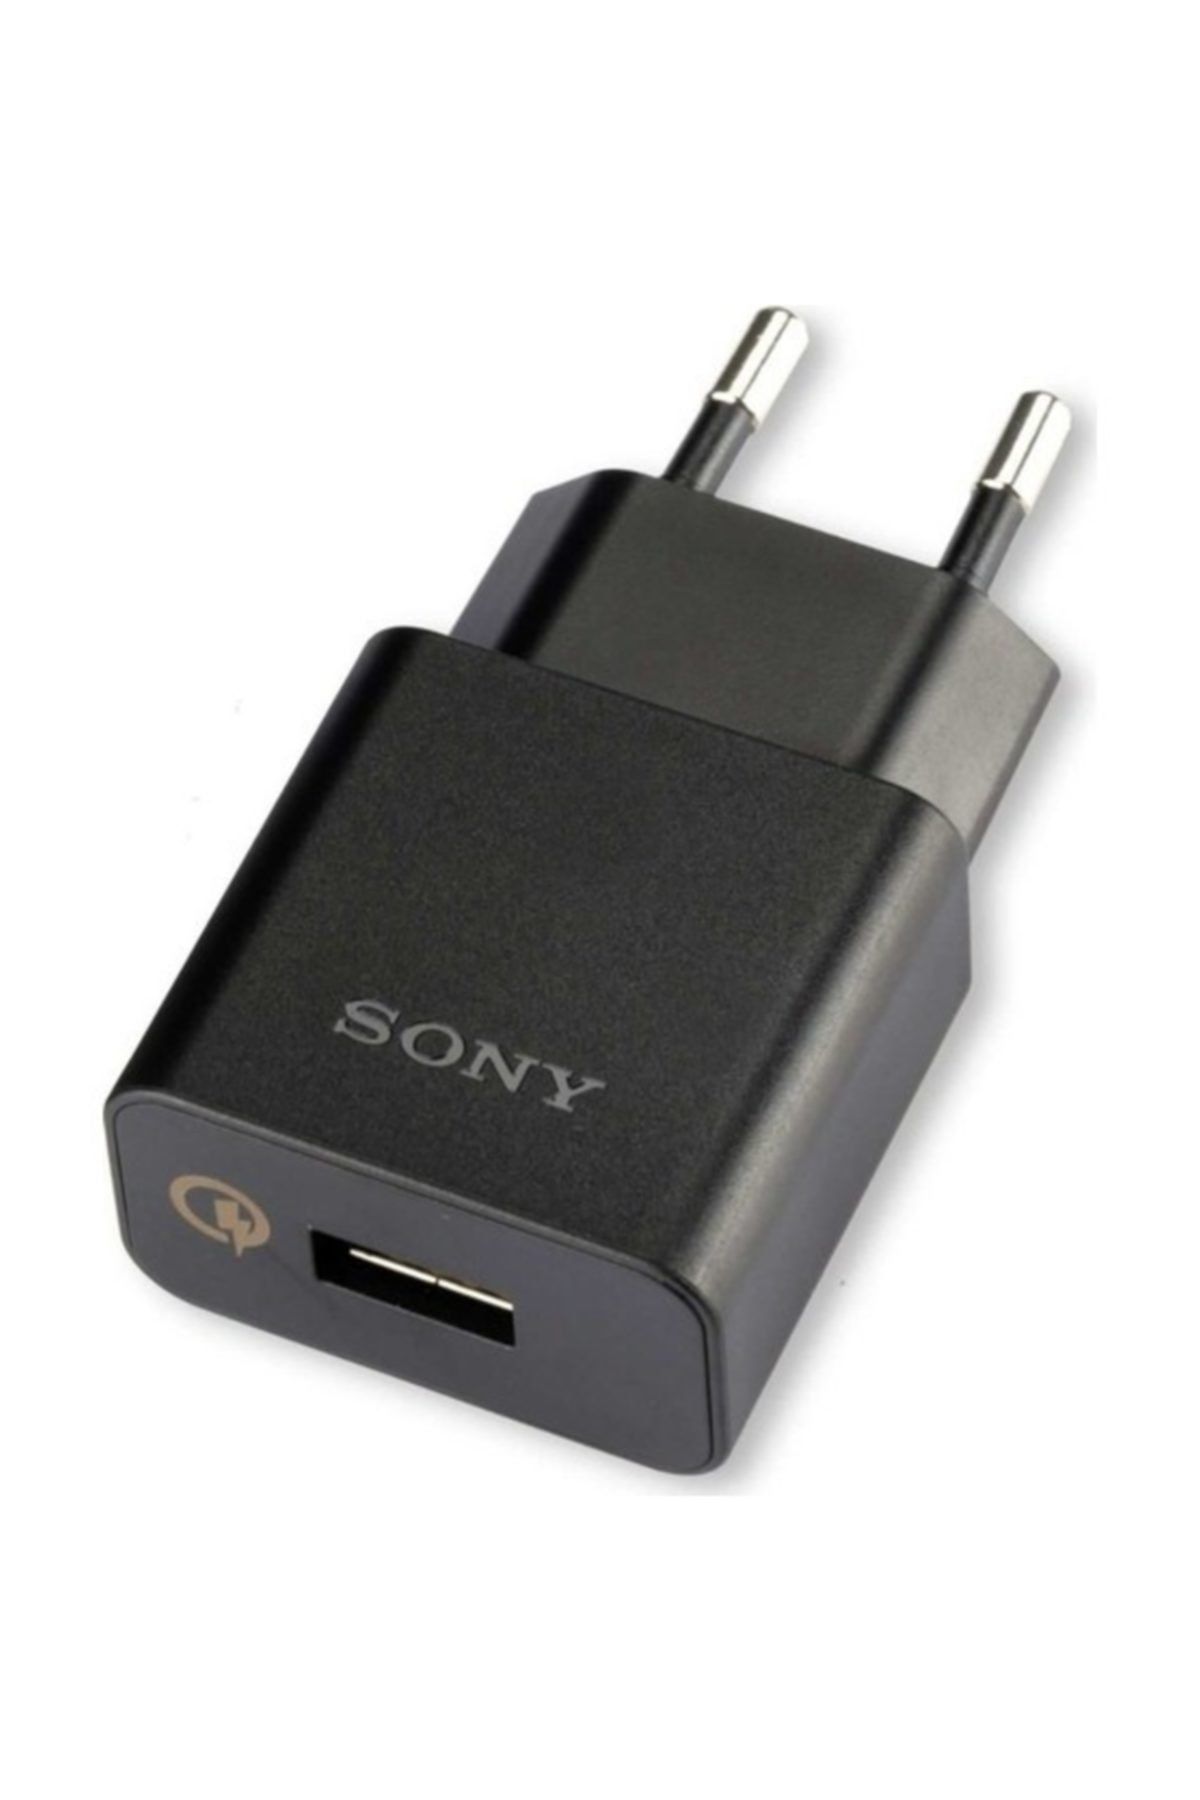 Sony Uch10 2.0a Hızlı Şarj Cihazı + Micro Usb Kablo - Siyah (Ithalatçı Garantili)